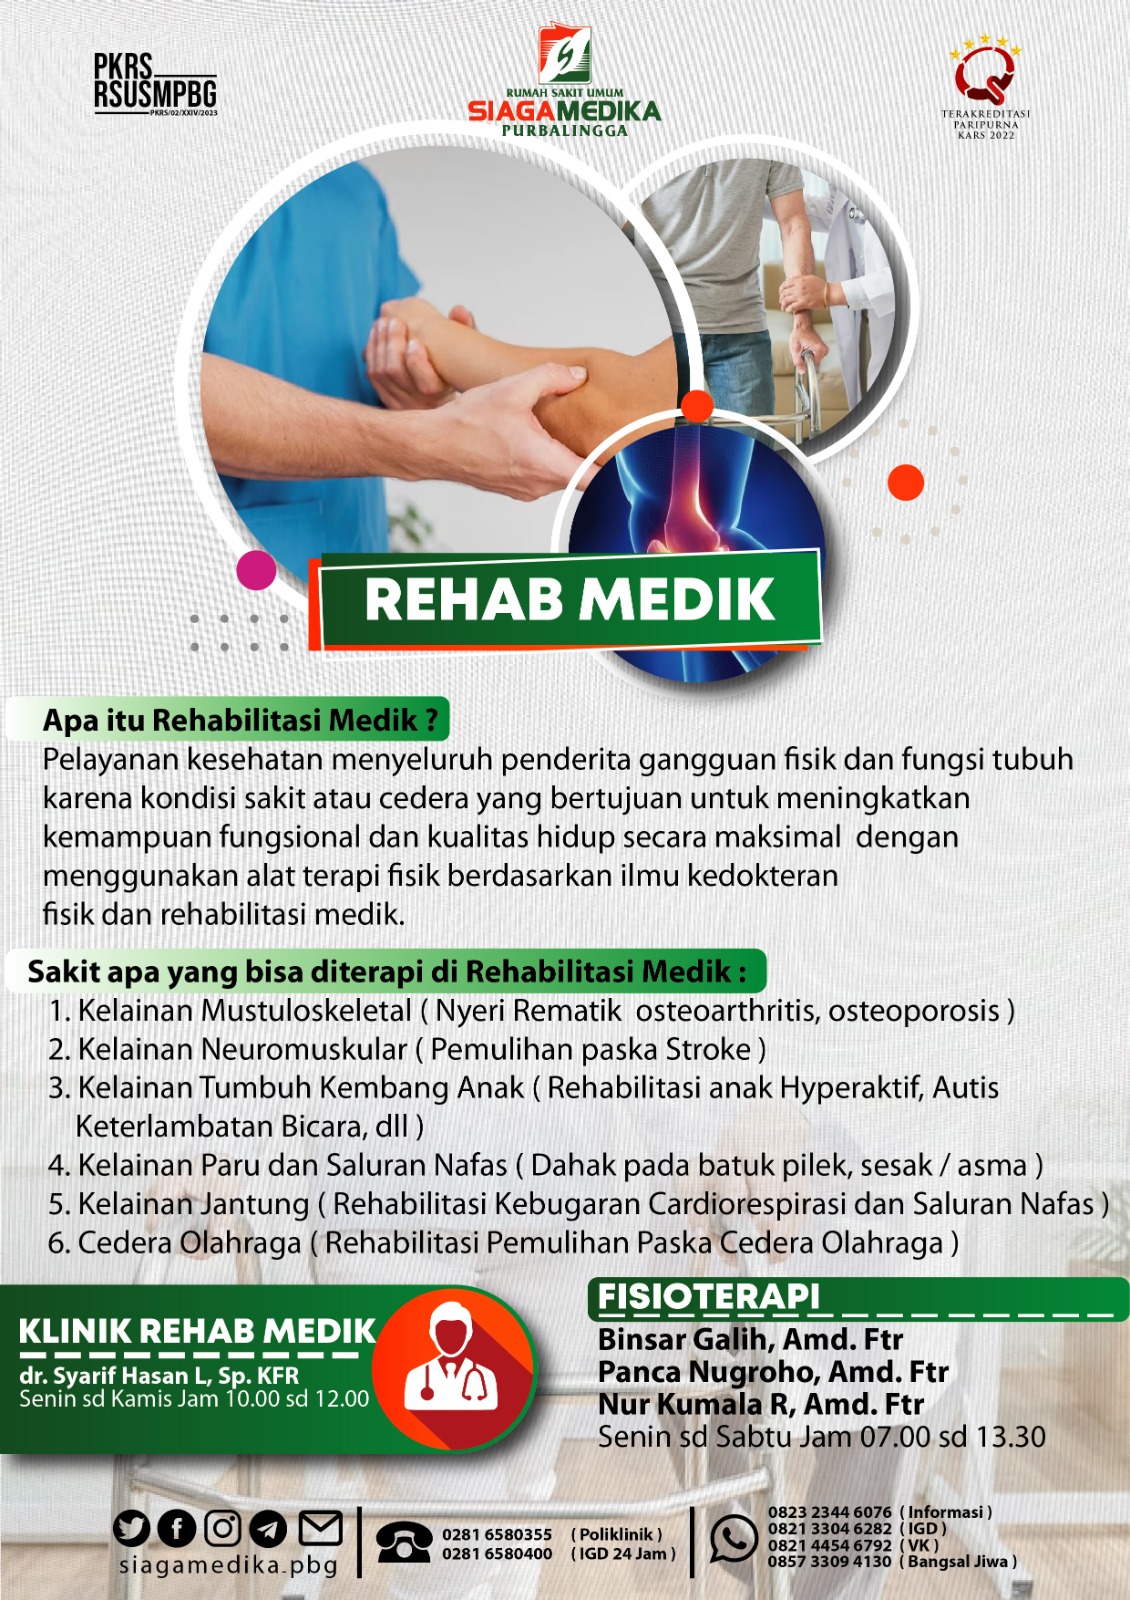 klinik rehab medik & Fisiotrapi